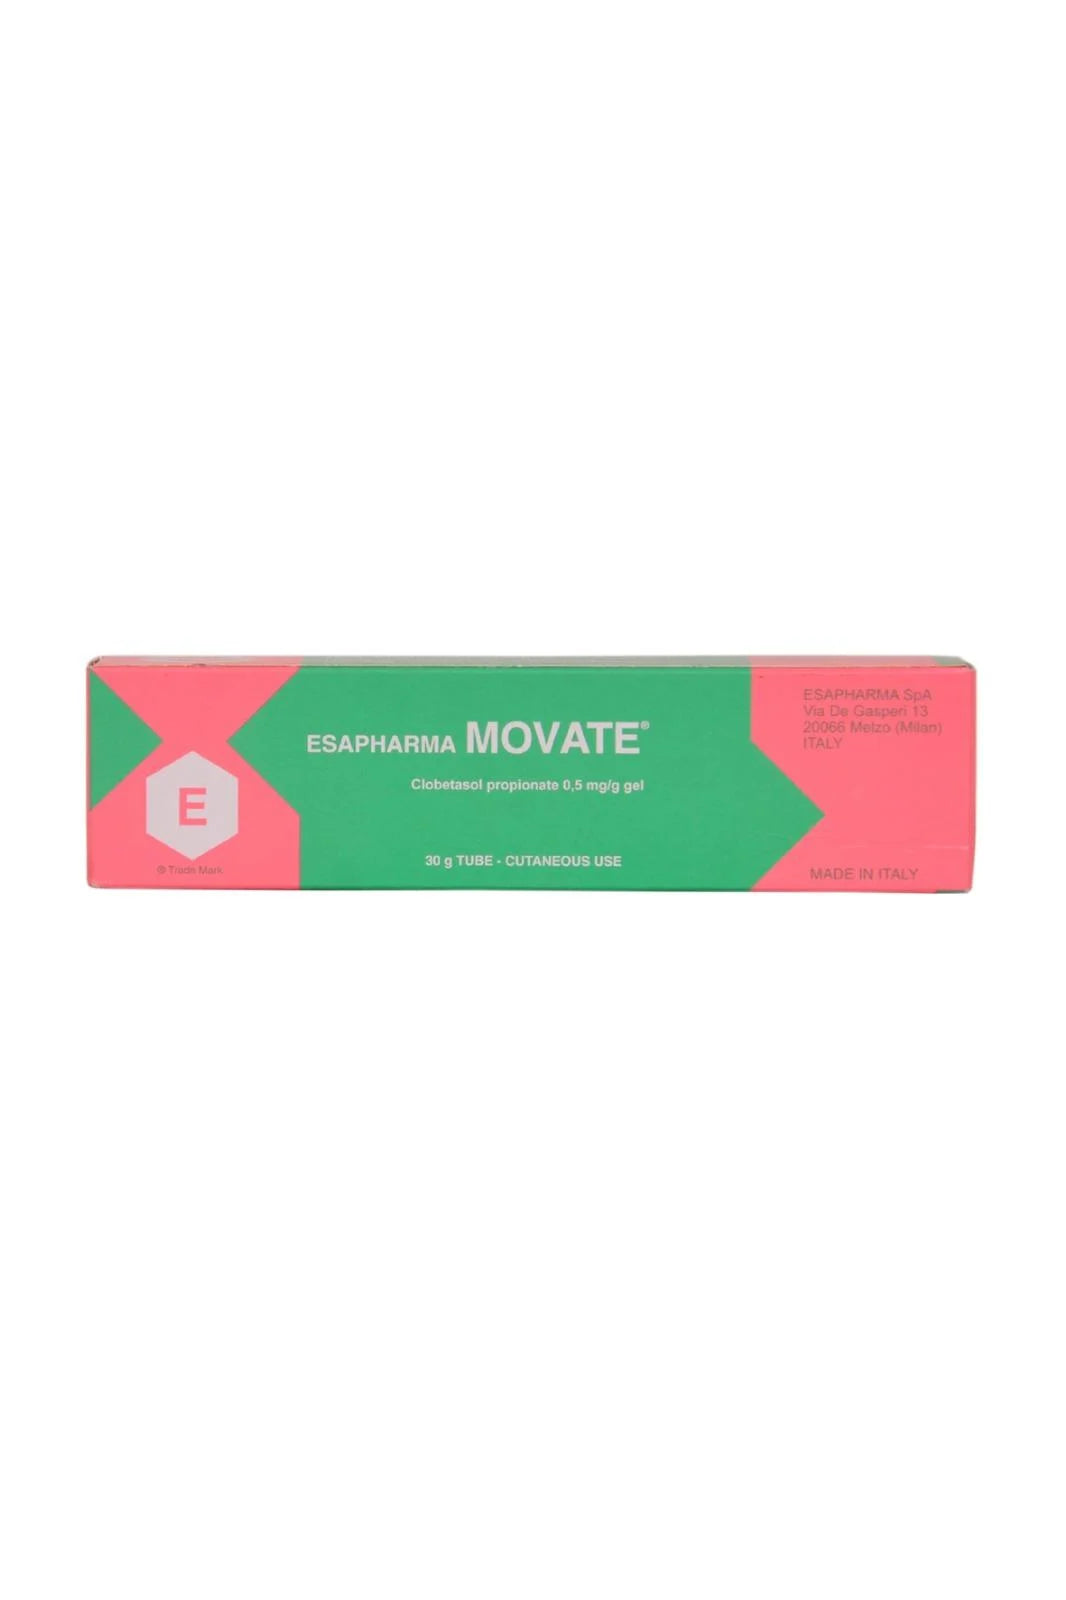 Esapharma Movate Clobetasol Propionate 0.5 mg/g (30gr)